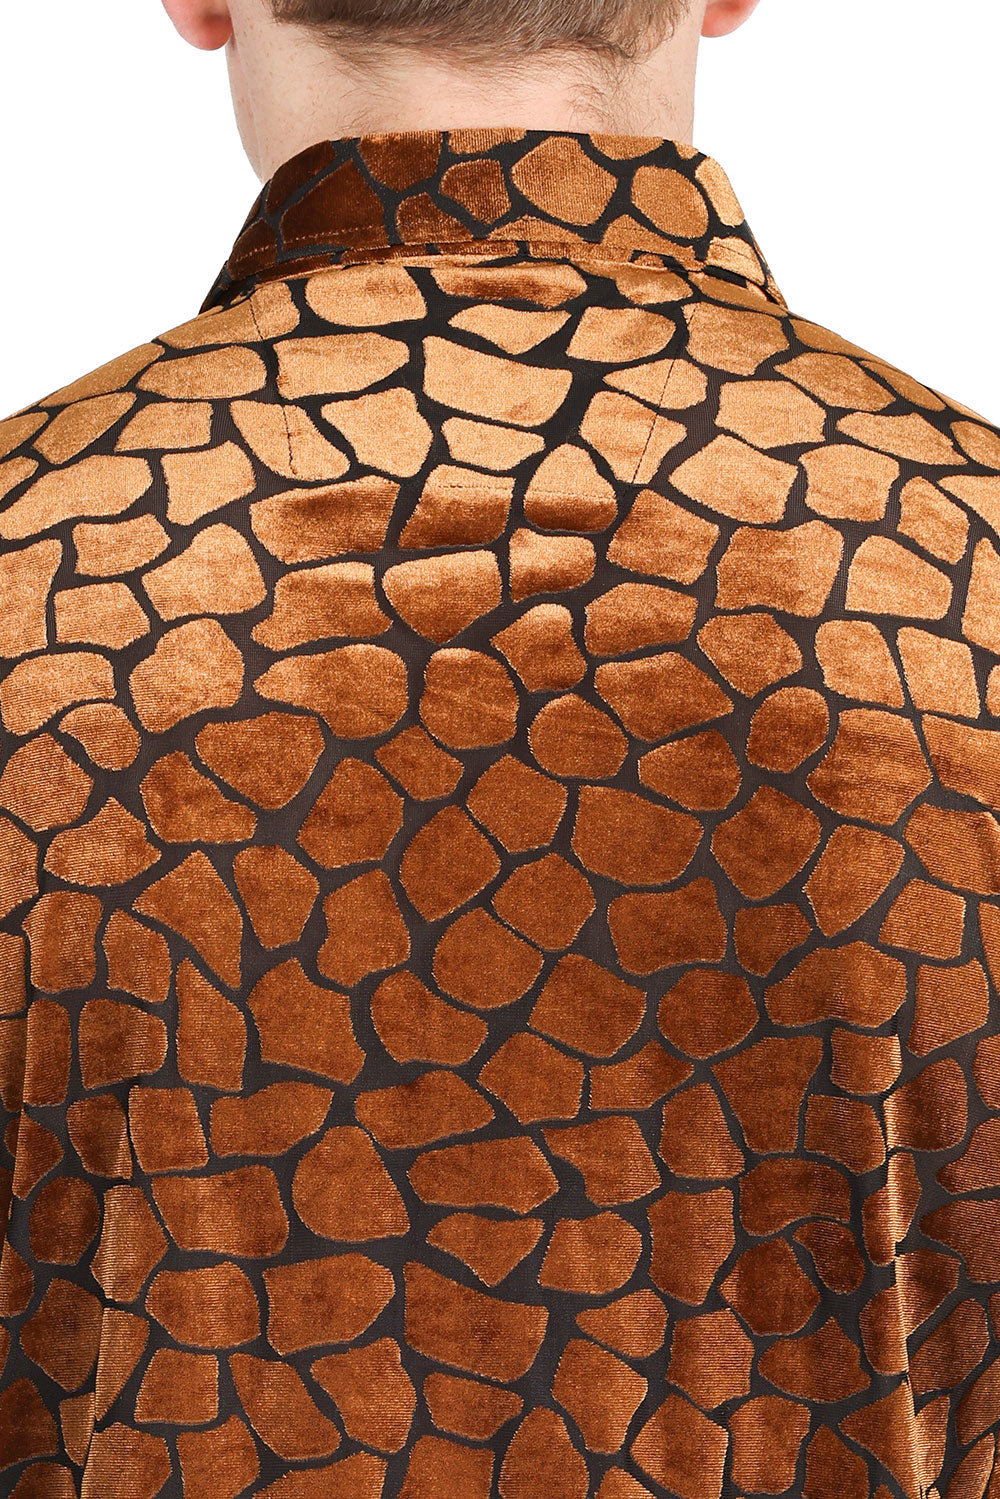 Barabas Rock Formation Velvet Button Up Shirt - Dudes Boutique